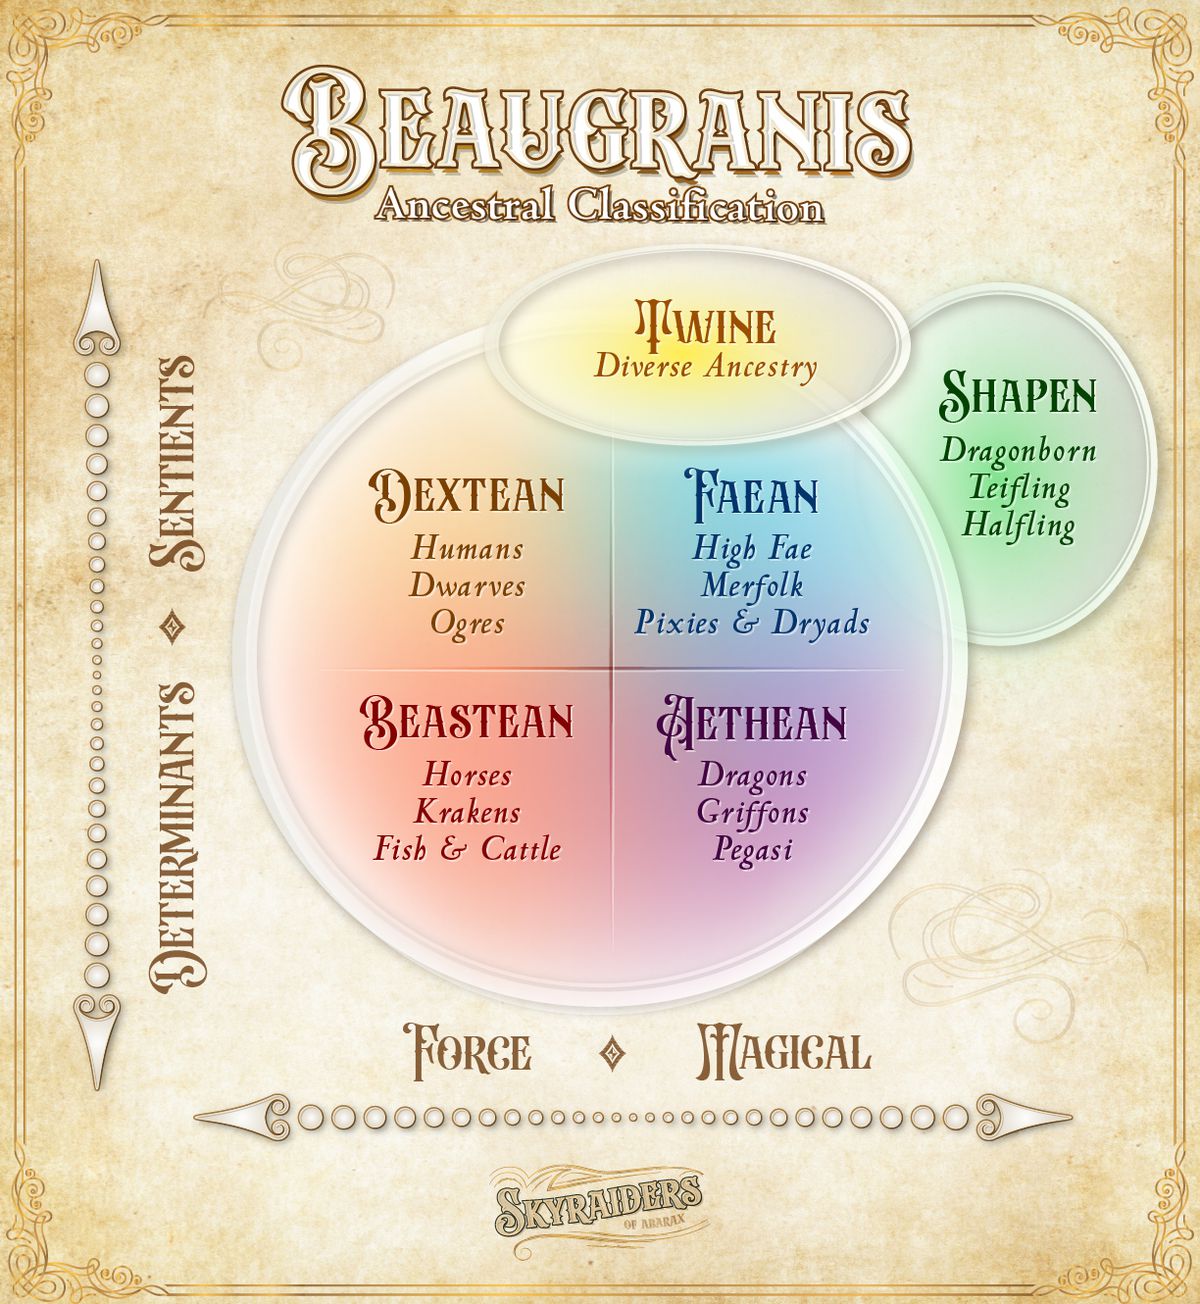 Una specie di diagramma di Venn, che mostra come le creature umanoidi sono classificate in base al livello di sensibilità e abilità magiche.